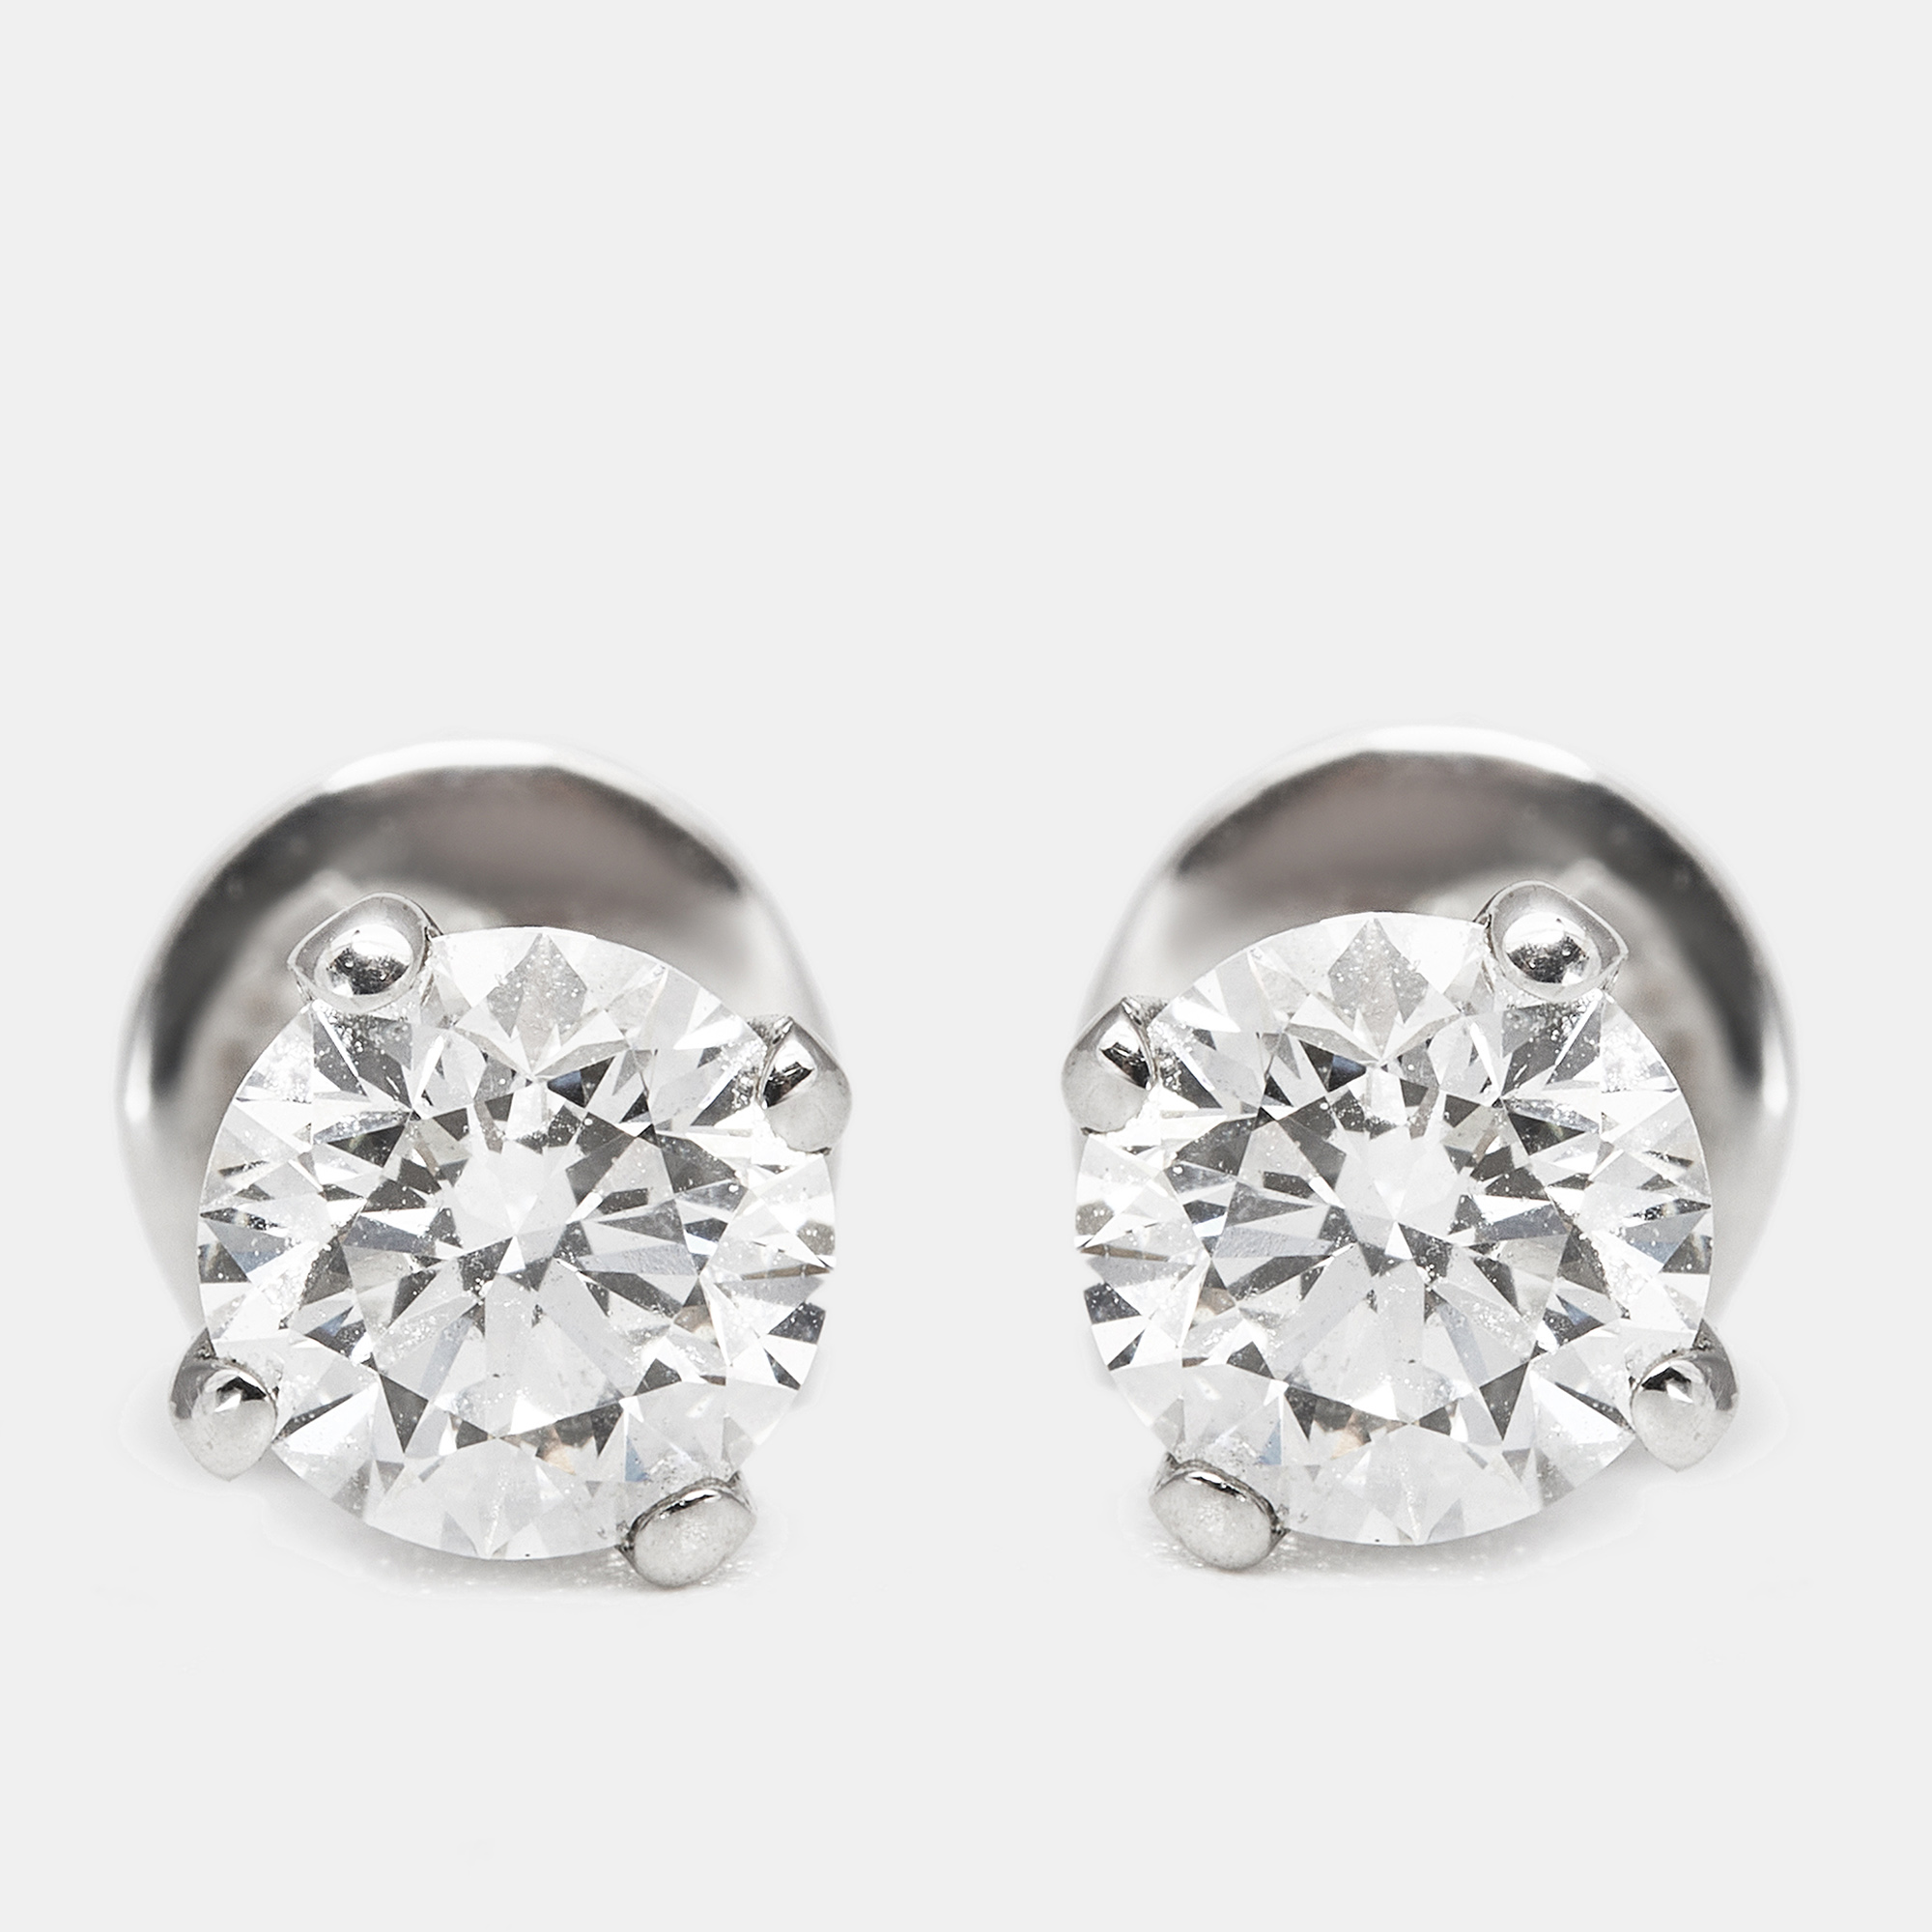 The diamond edit 18k white gold  earring